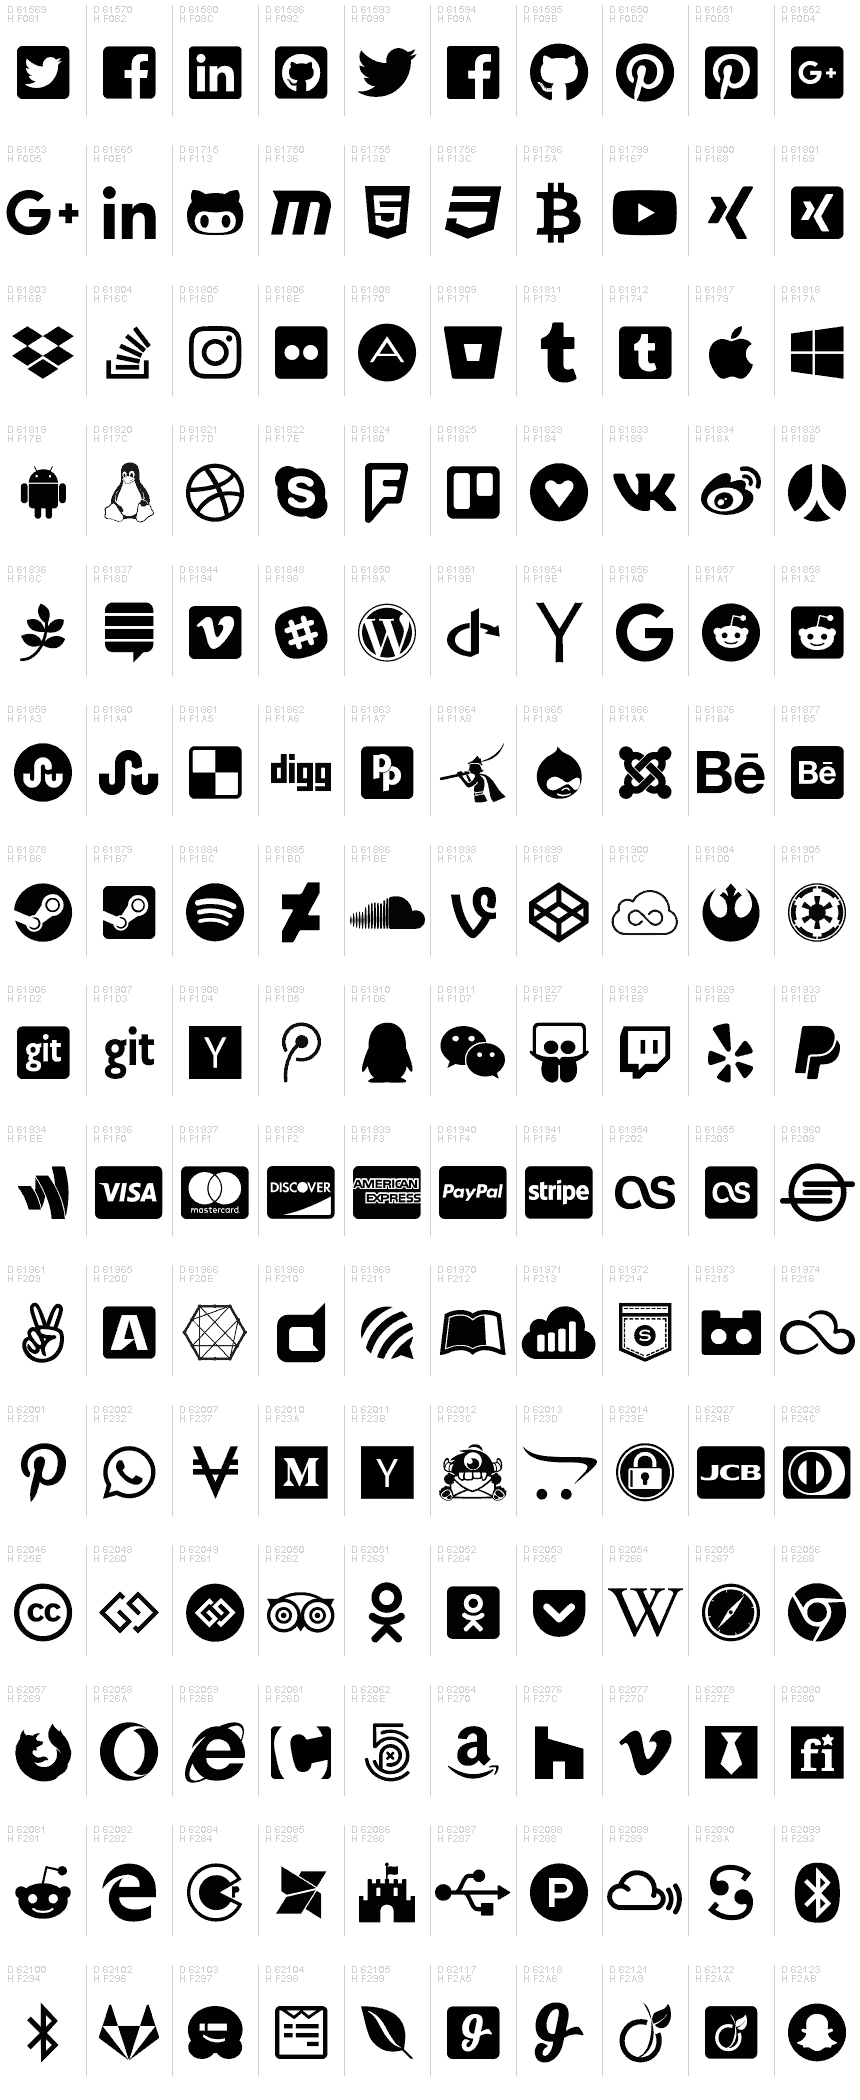 Phiên bản mới nhất của Font Awesome 5 Brands mang đến cảm giác mới mẻ và đặc biệt cho người dùng. Với việc cập nhật biểu tượng và tính năng mới, Font Awesome 5 Brands trở nên đáng tin cậy và chuyên nghiệp hơn. Tham khảo hình ảnh liên quan để khám phá phiên bản mới nhất của Font Awesome 5 Brands.